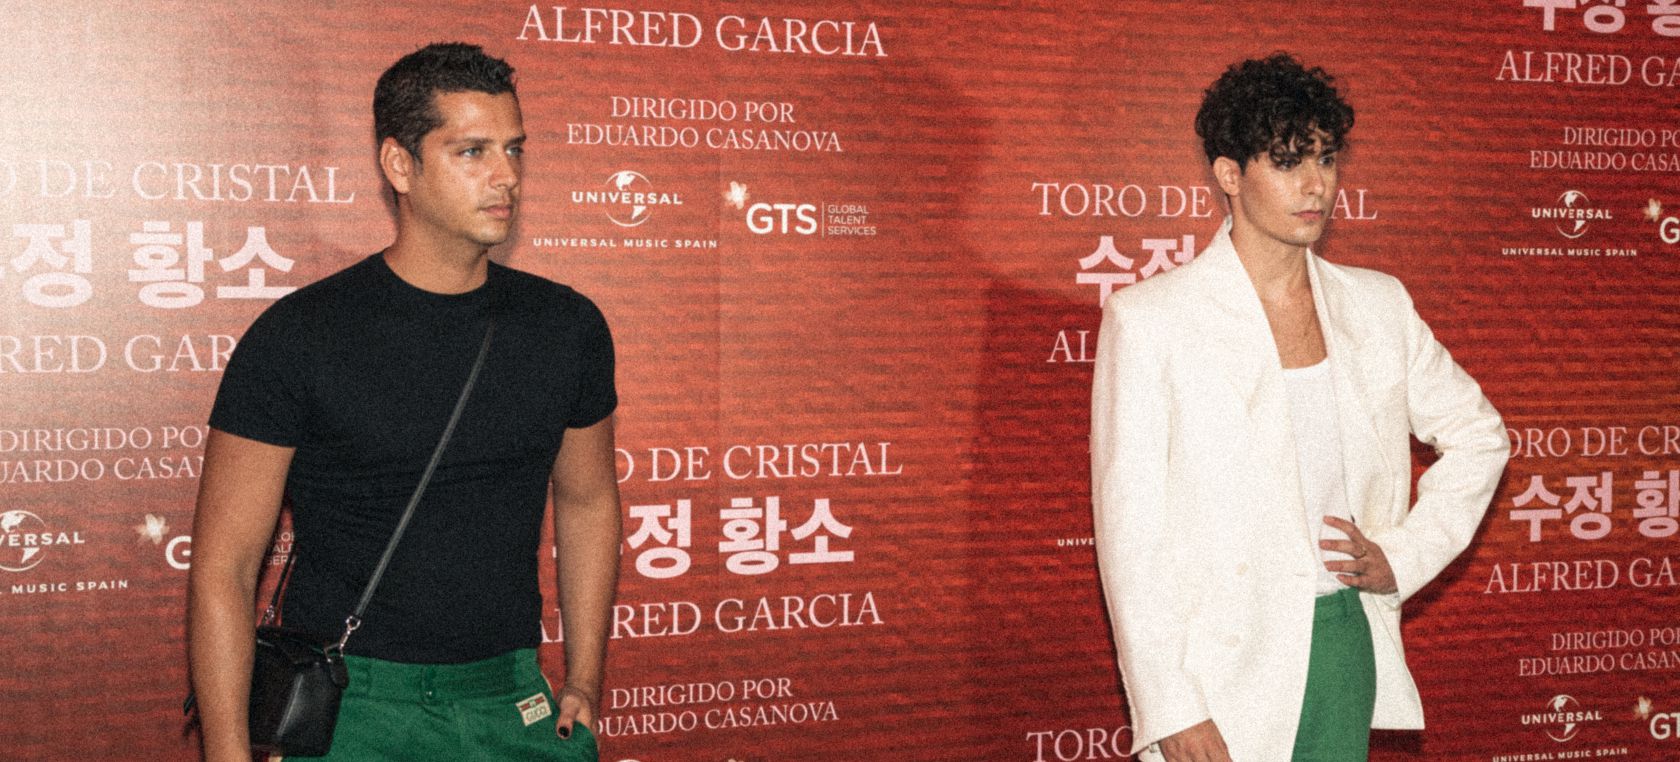 Alfred García reúne a amigos y fans para presentar ‘Toro de Cristal’, su nuevo vídeo musical